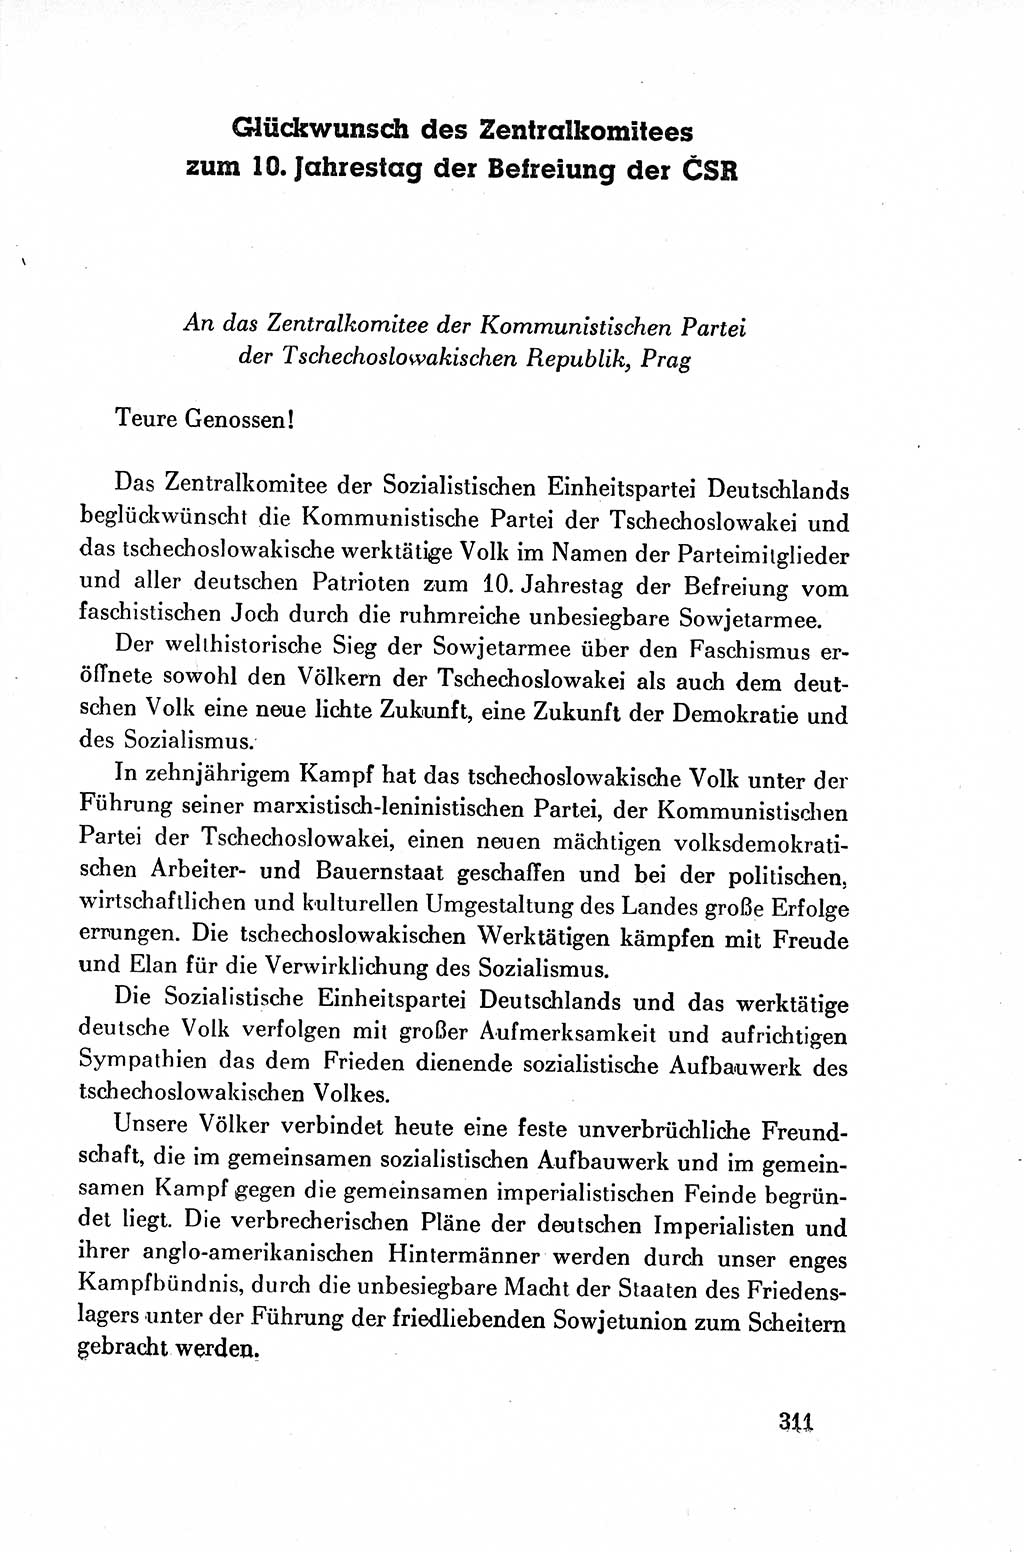 Dokumente der Sozialistischen Einheitspartei Deutschlands (SED) [Deutsche Demokratische Republik (DDR)] 1954-1955, Seite 311 (Dok. SED DDR 1954-1955, S. 311)